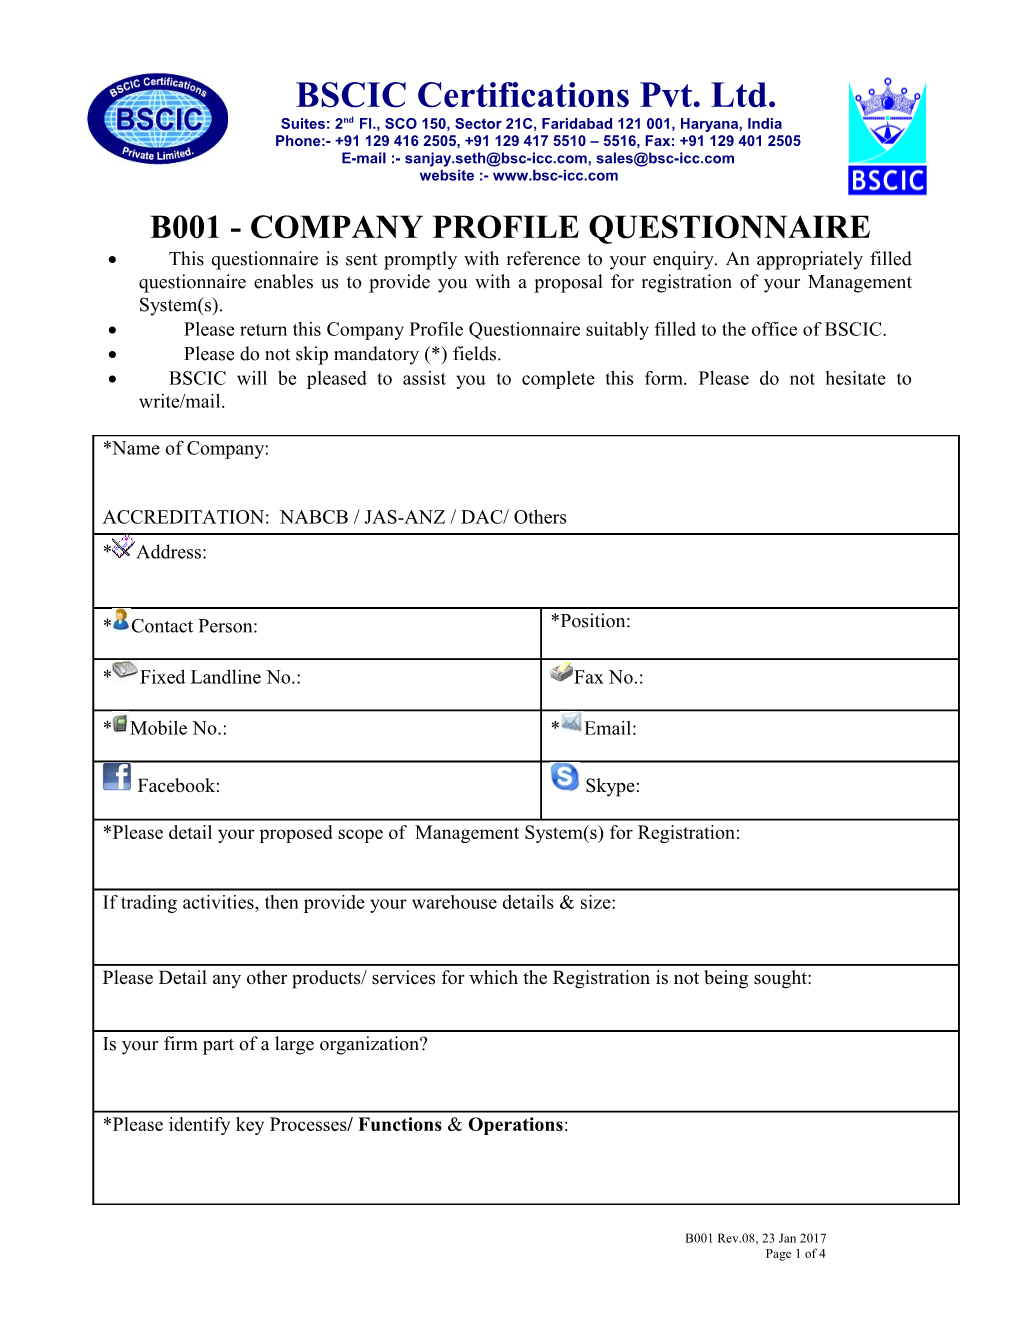 B001 - Company Profile Questionnaire